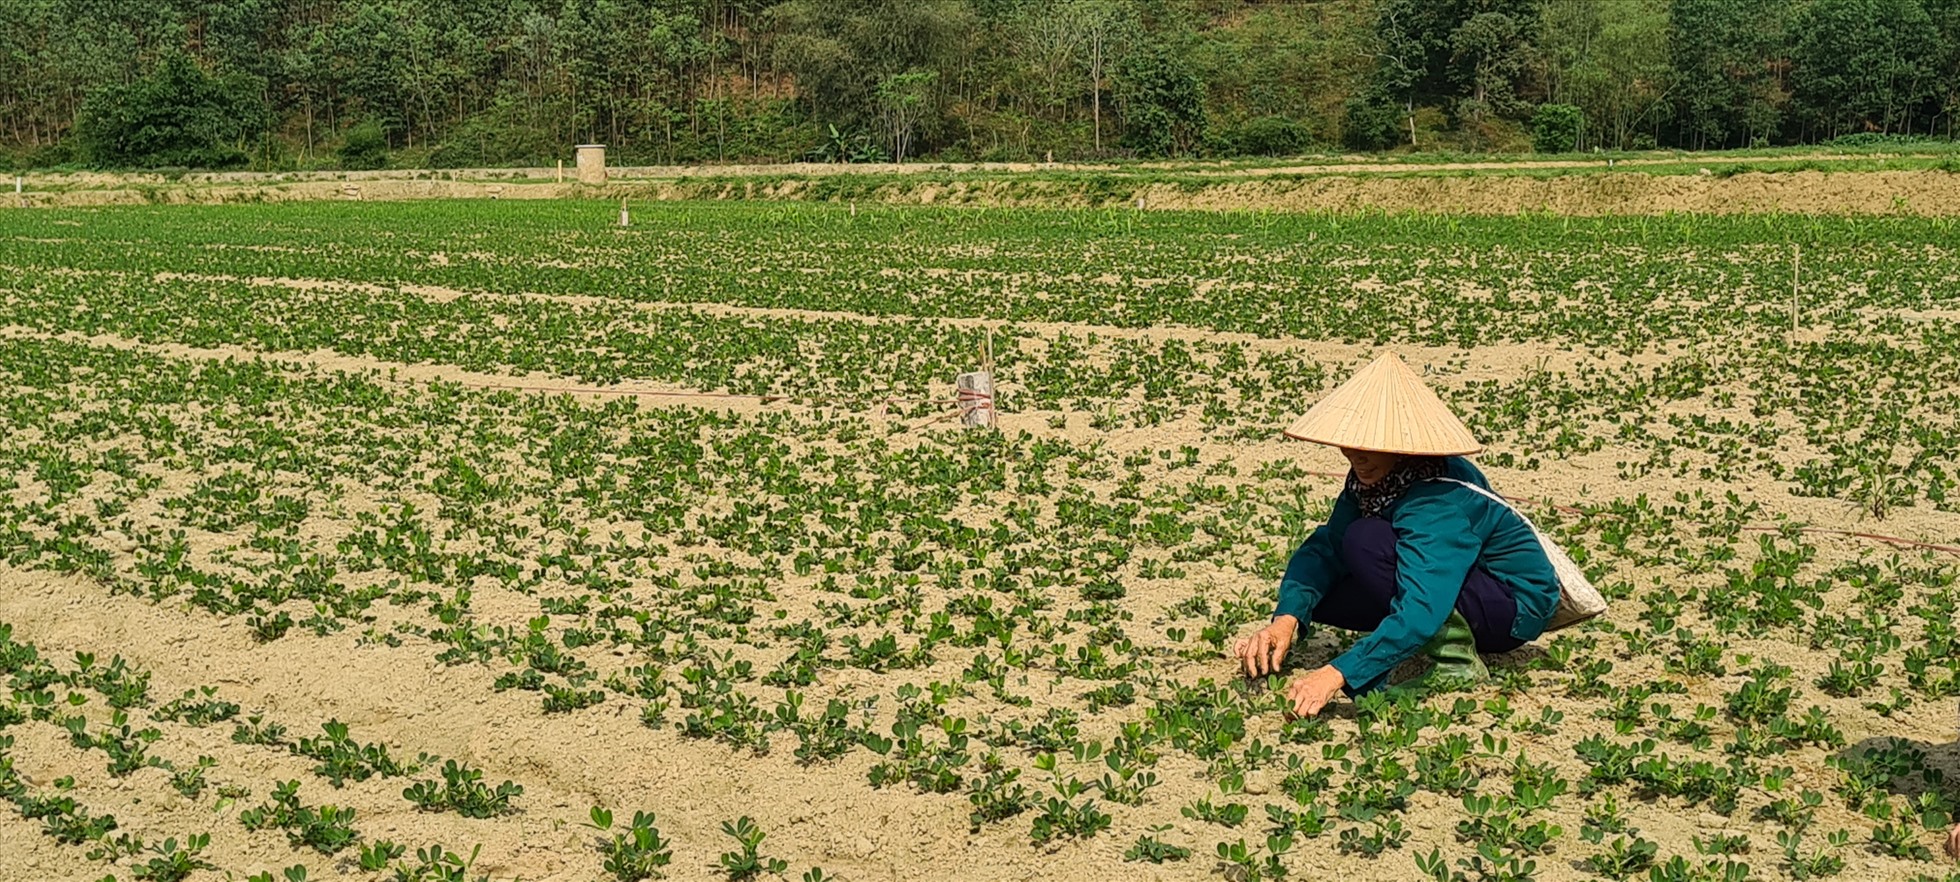 Việt Nam thể hiện vai trò là nhà cung cấp lương thực thực phẩm minh bạch, trách nhiệm, bền vững. Ảnh: Vũ Long